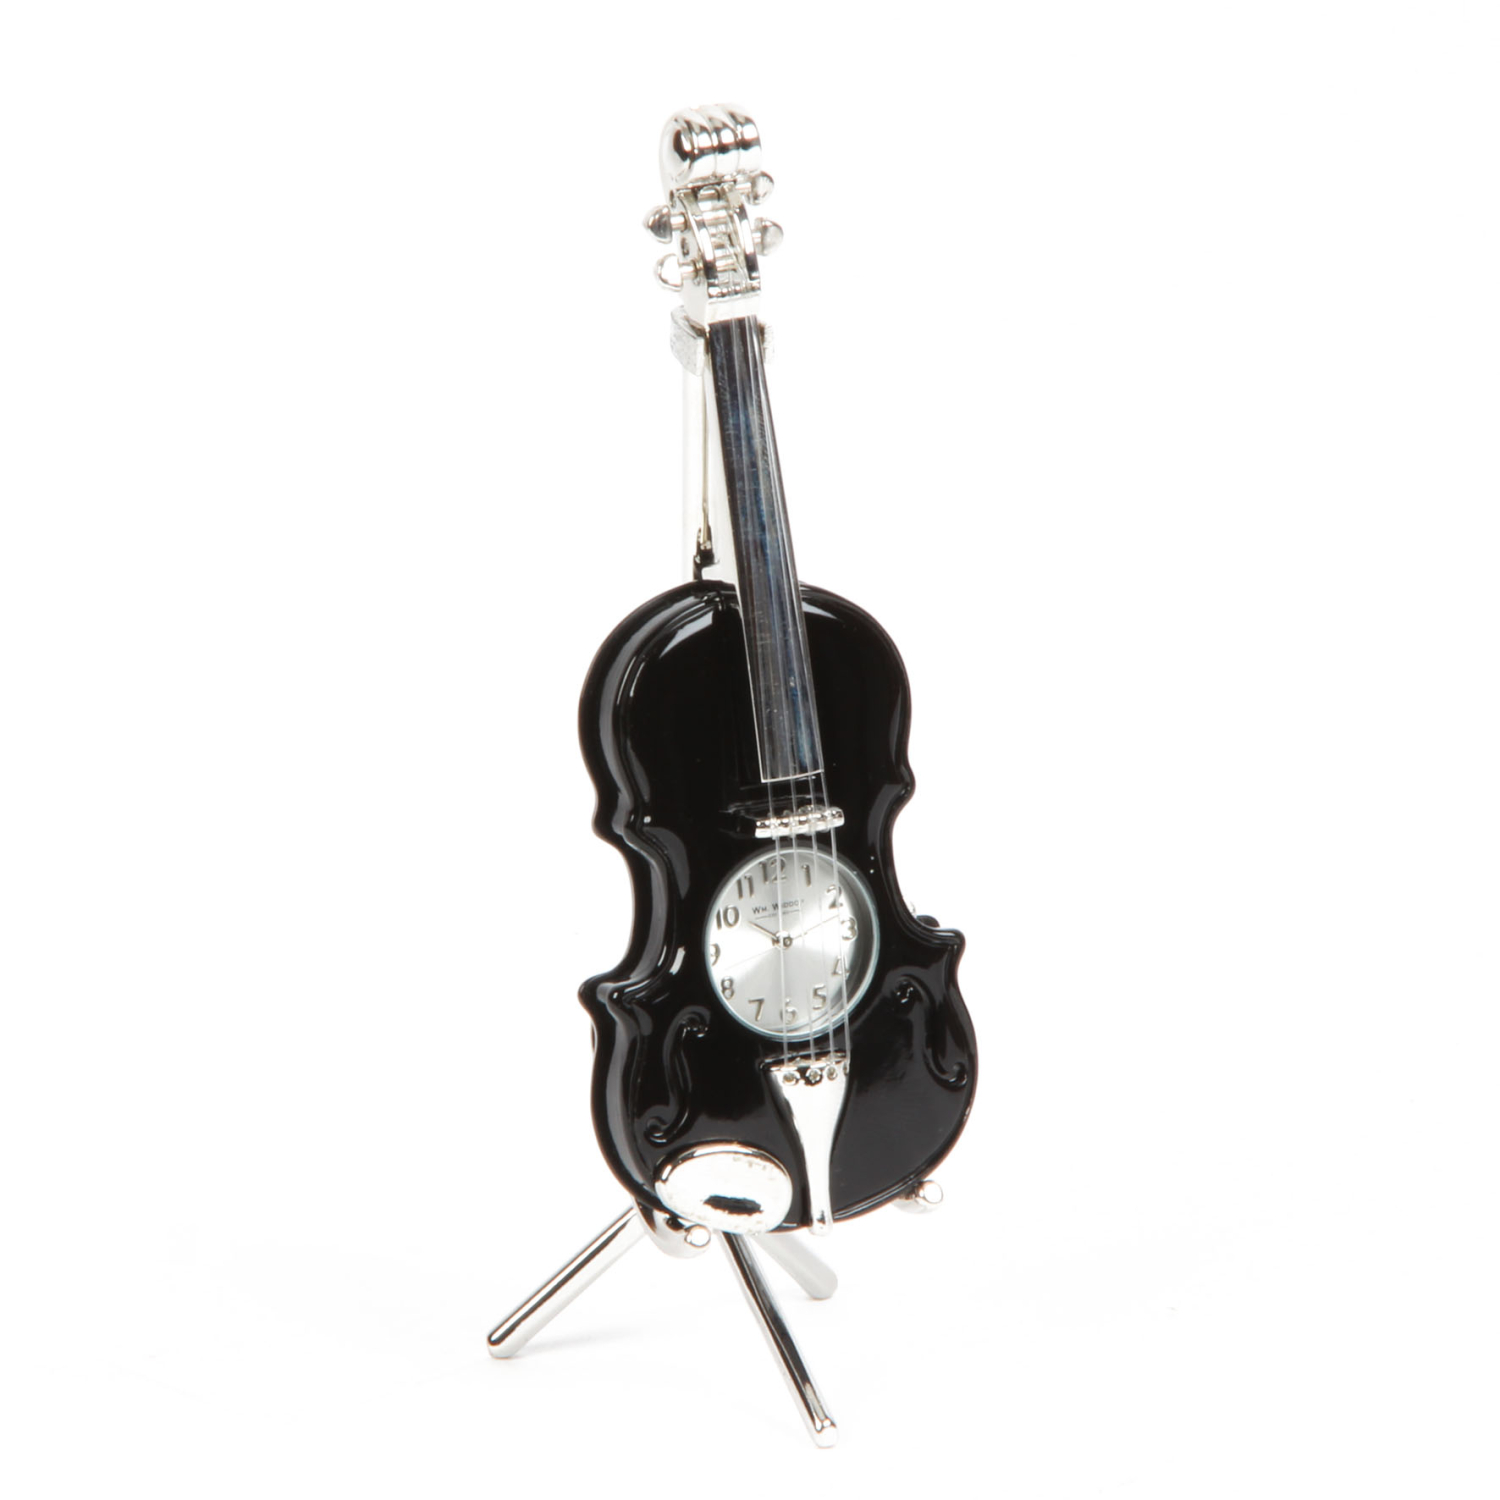 Die versilberte Schreibtischuhr schwarze Violine mit Ständer!  Miniaturuhr Versilbert